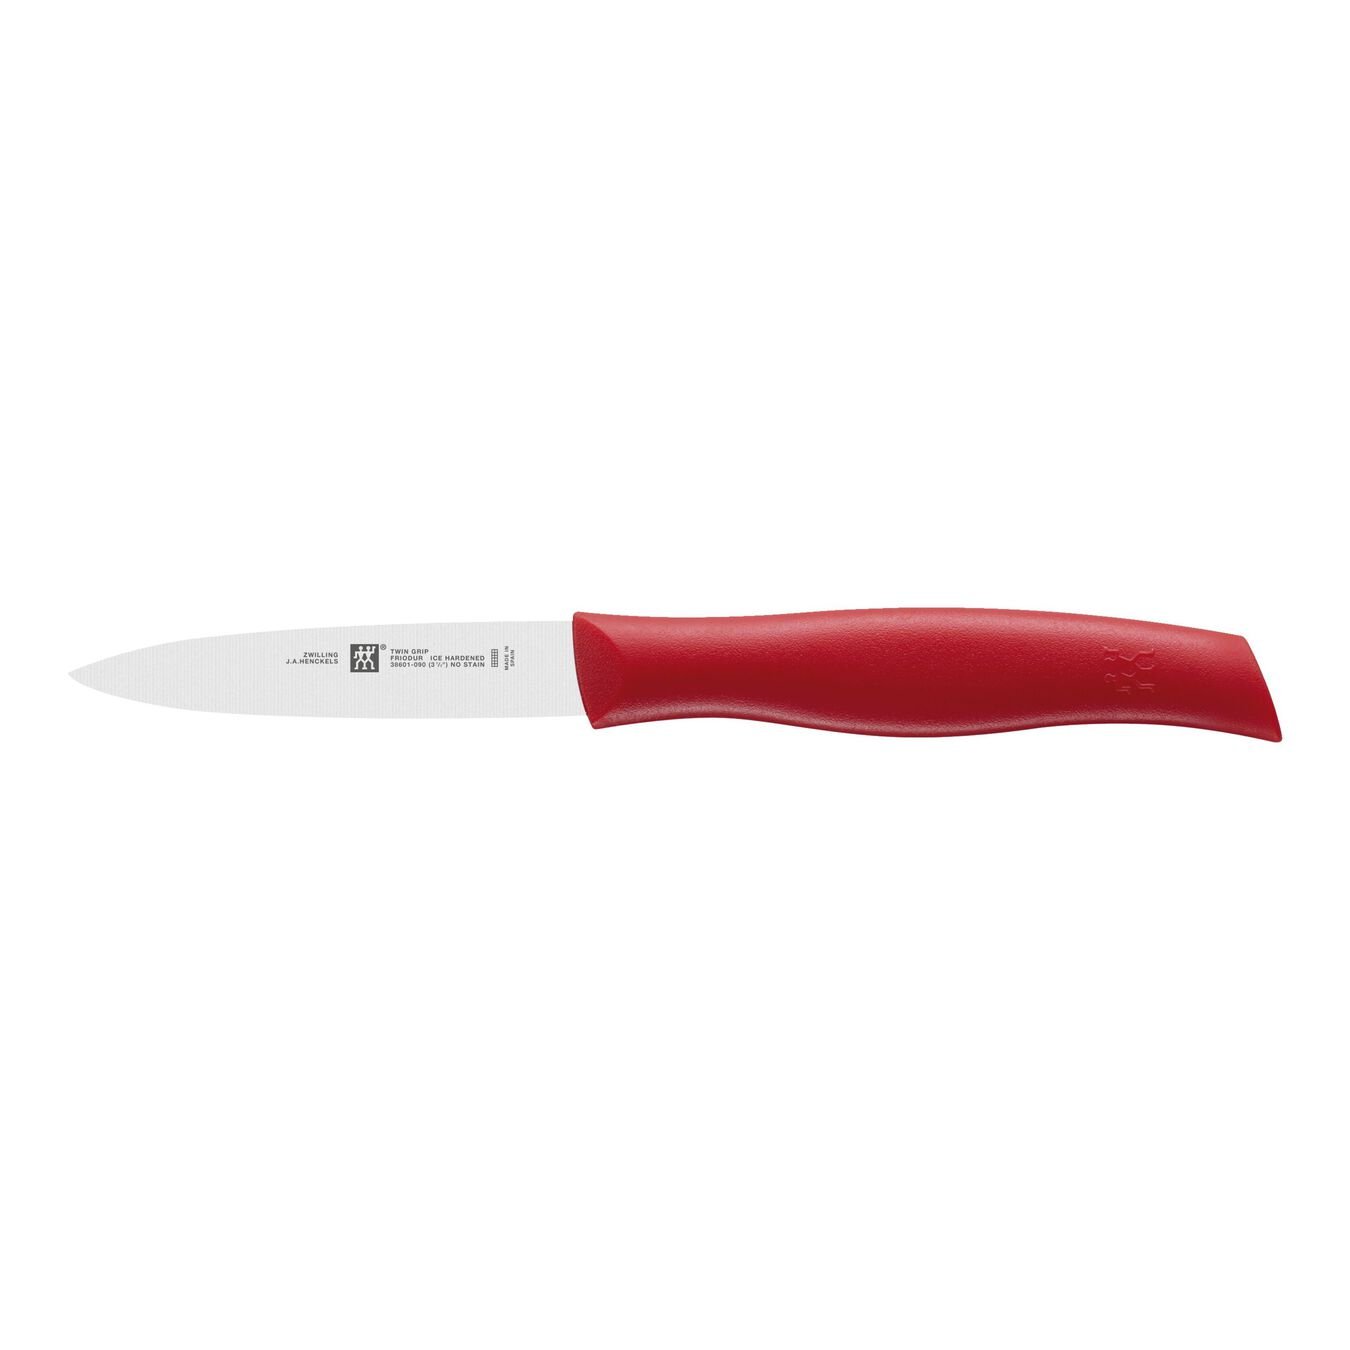 Couteau à larder et garnir 9 cm, Rouge,,large 1